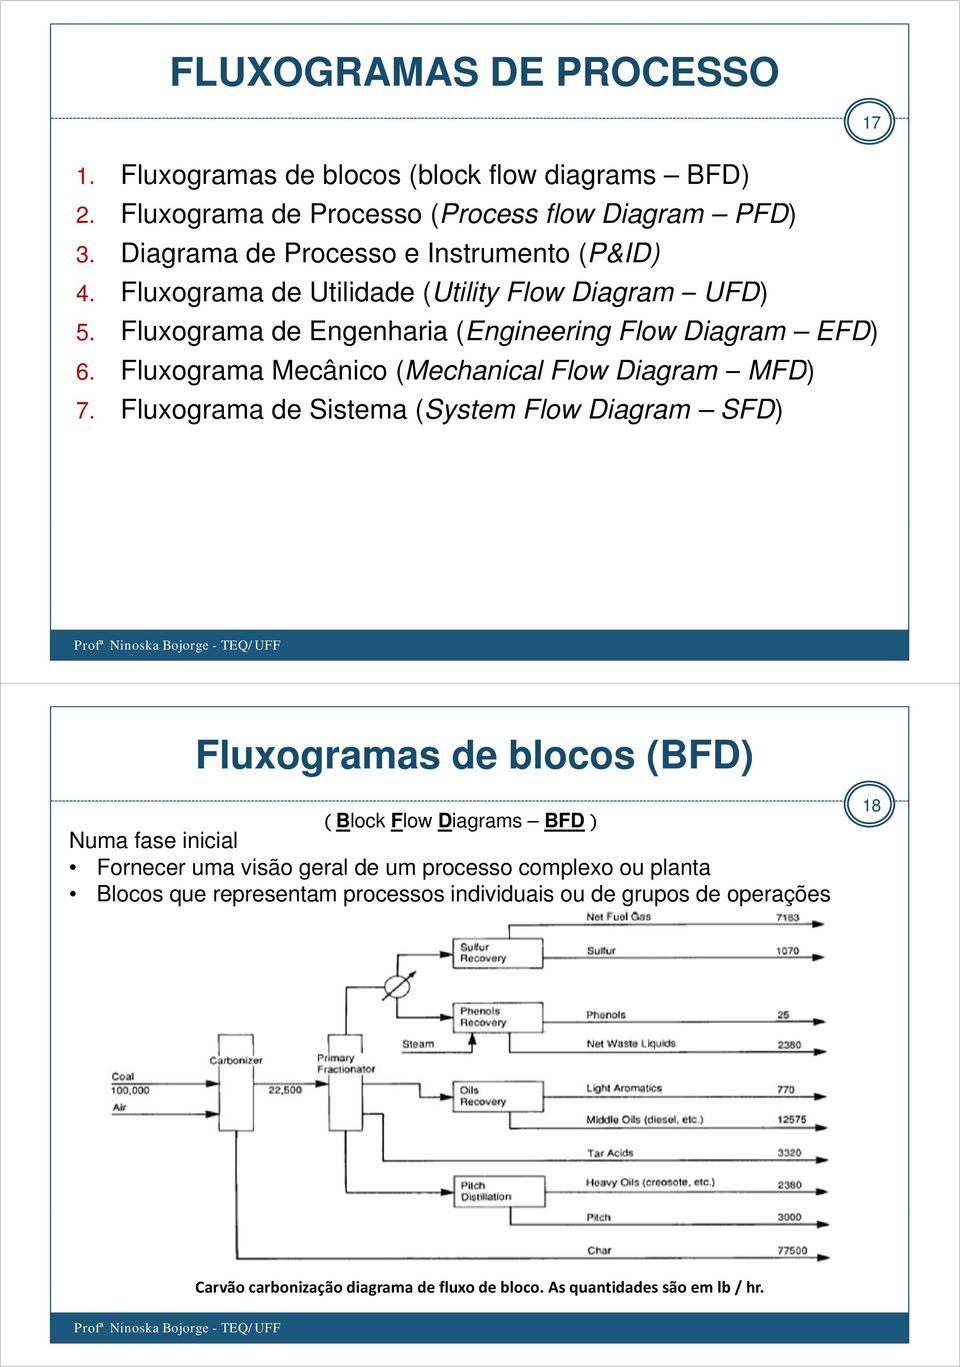 Fluxograma Mecânico (Mechanical Flow Diagram MFD) 7.